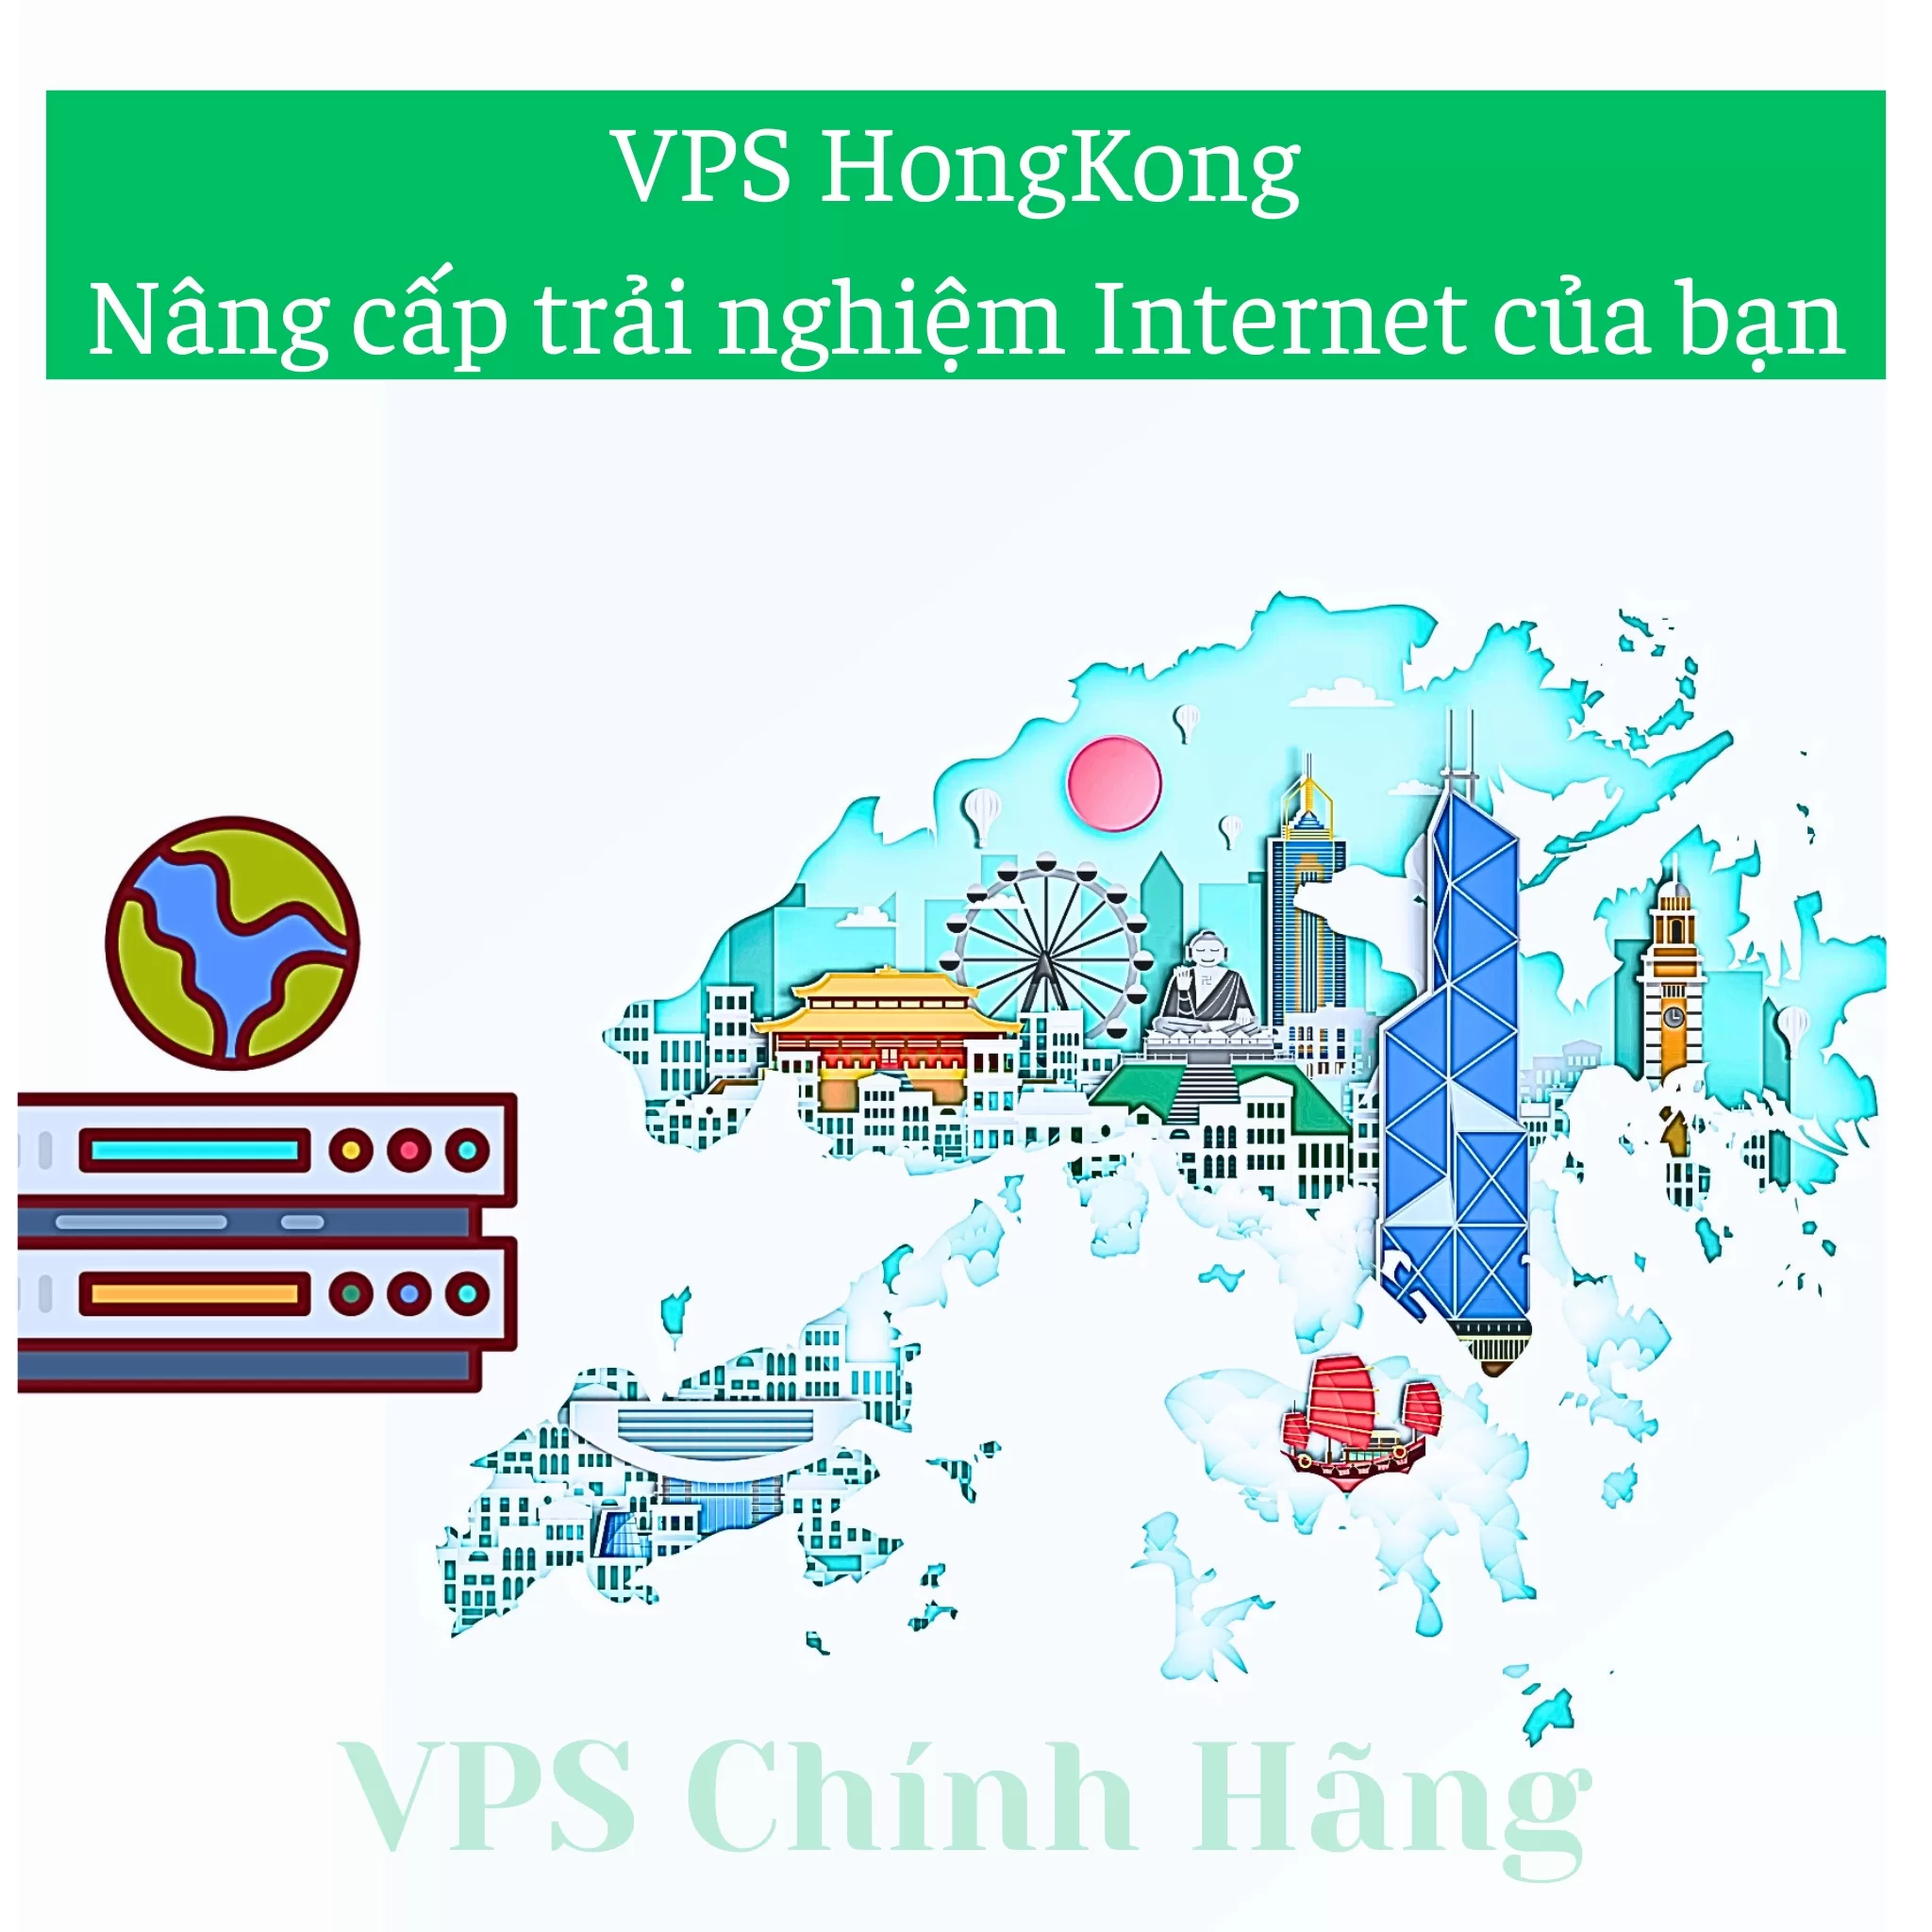 VPS HongKong - Nâng cấp trải nghiệm Internet của bạn